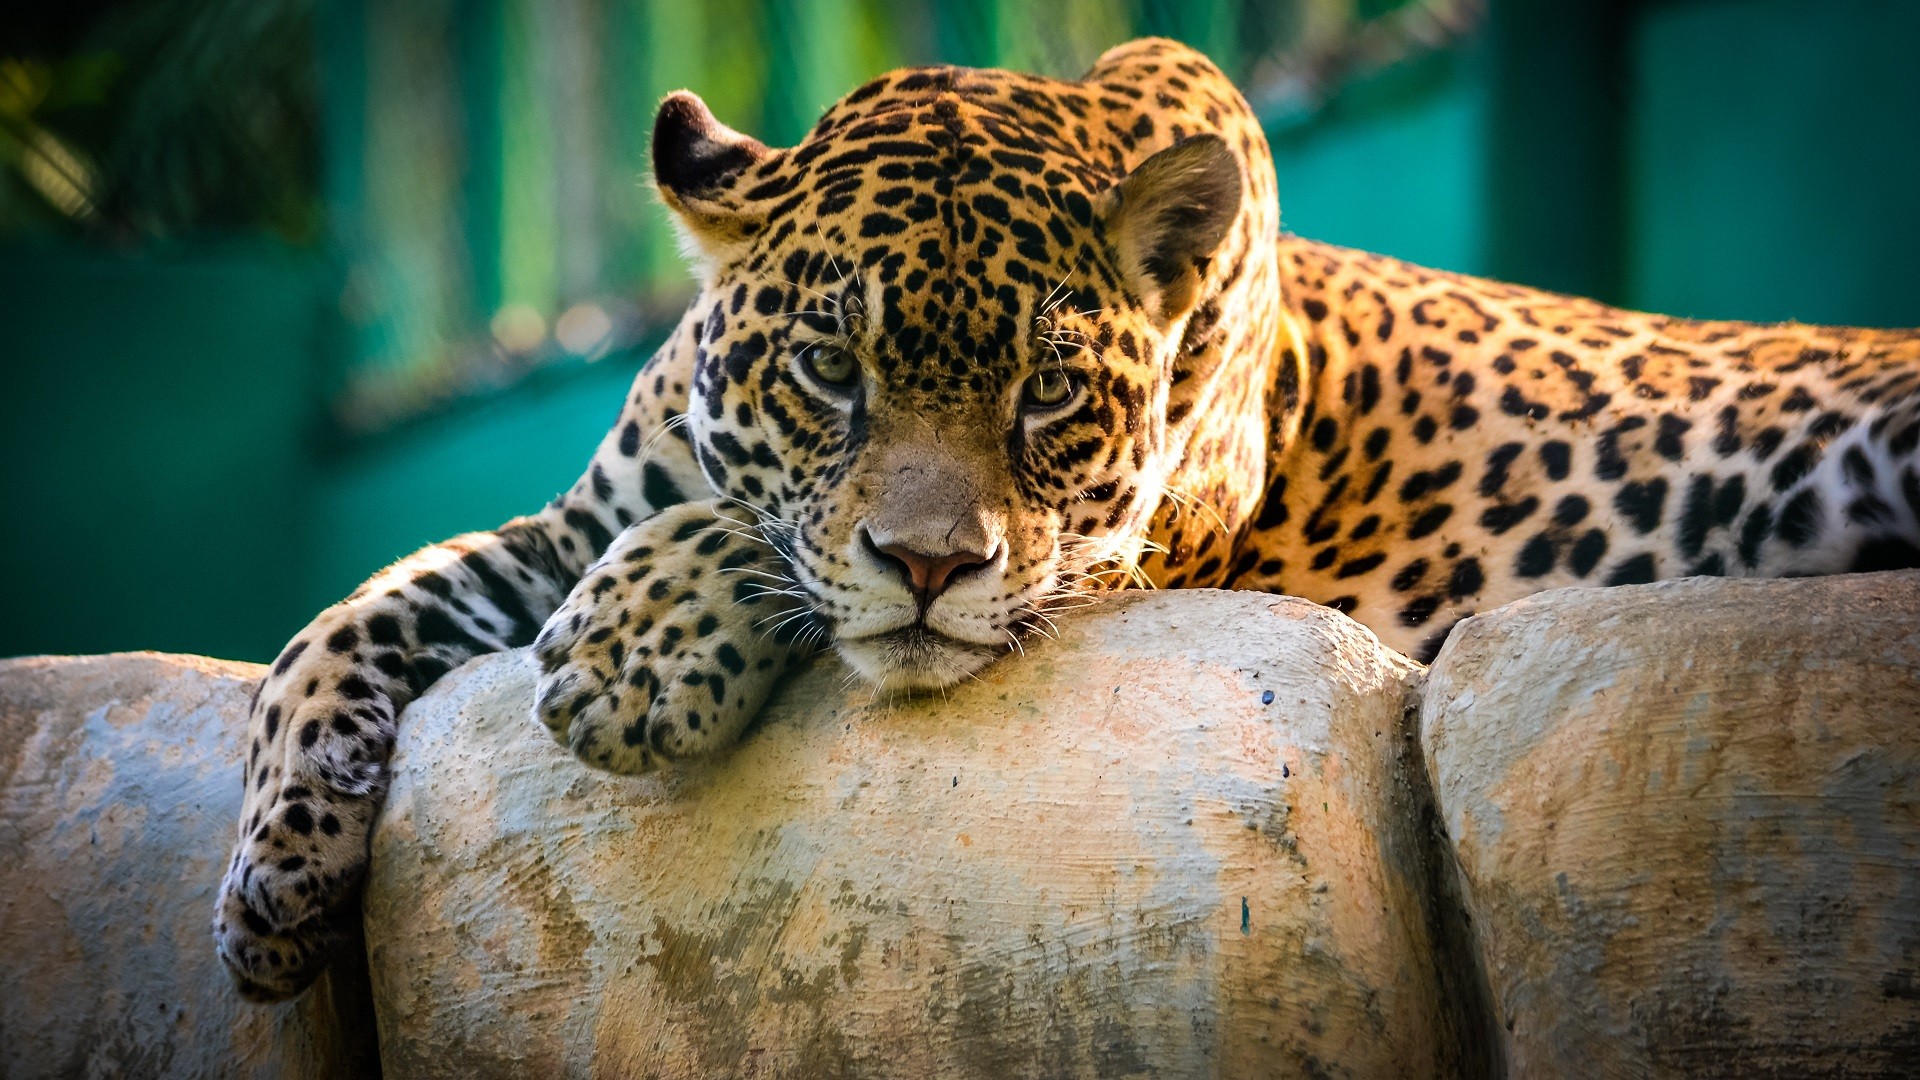 General 1920x1080 jaguars animals big cats mammals